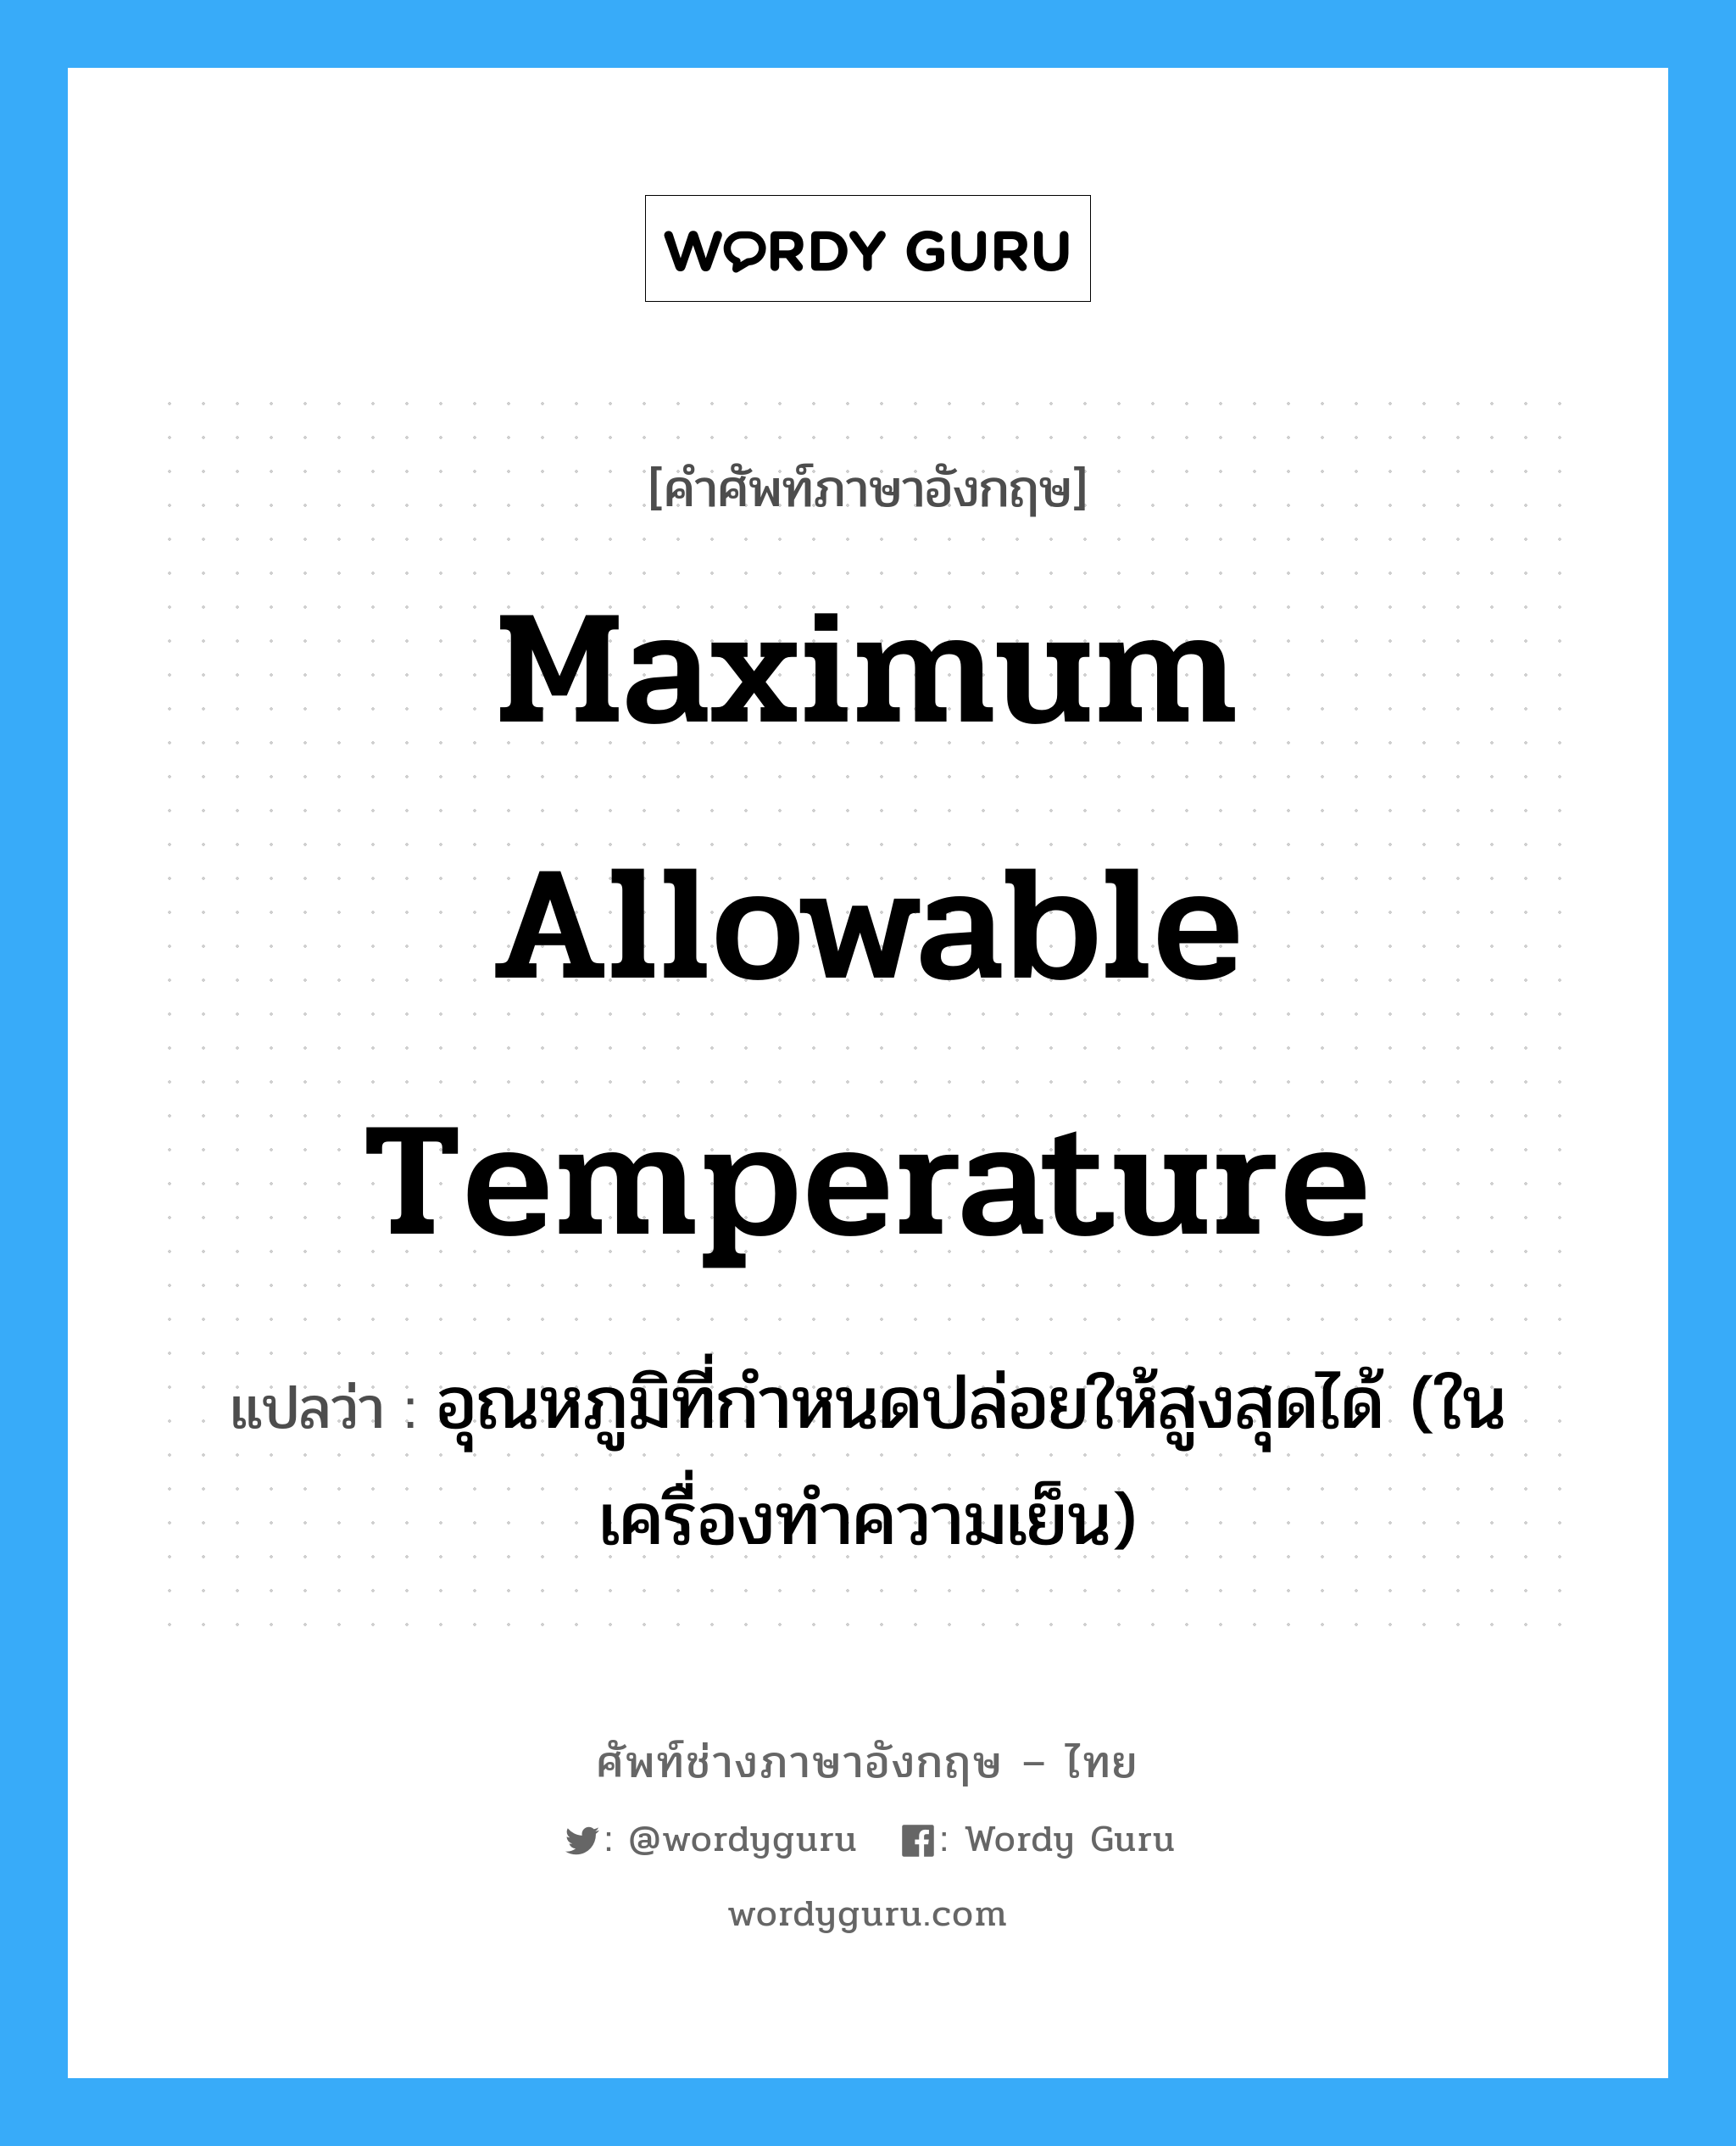 maximum allowable temperature แปลว่า?, คำศัพท์ช่างภาษาอังกฤษ - ไทย maximum allowable temperature คำศัพท์ภาษาอังกฤษ maximum allowable temperature แปลว่า อุณหภูมิที่กำหนดปล่อยให้สูงสุดได้ (ในเครื่องทำความเย็น)